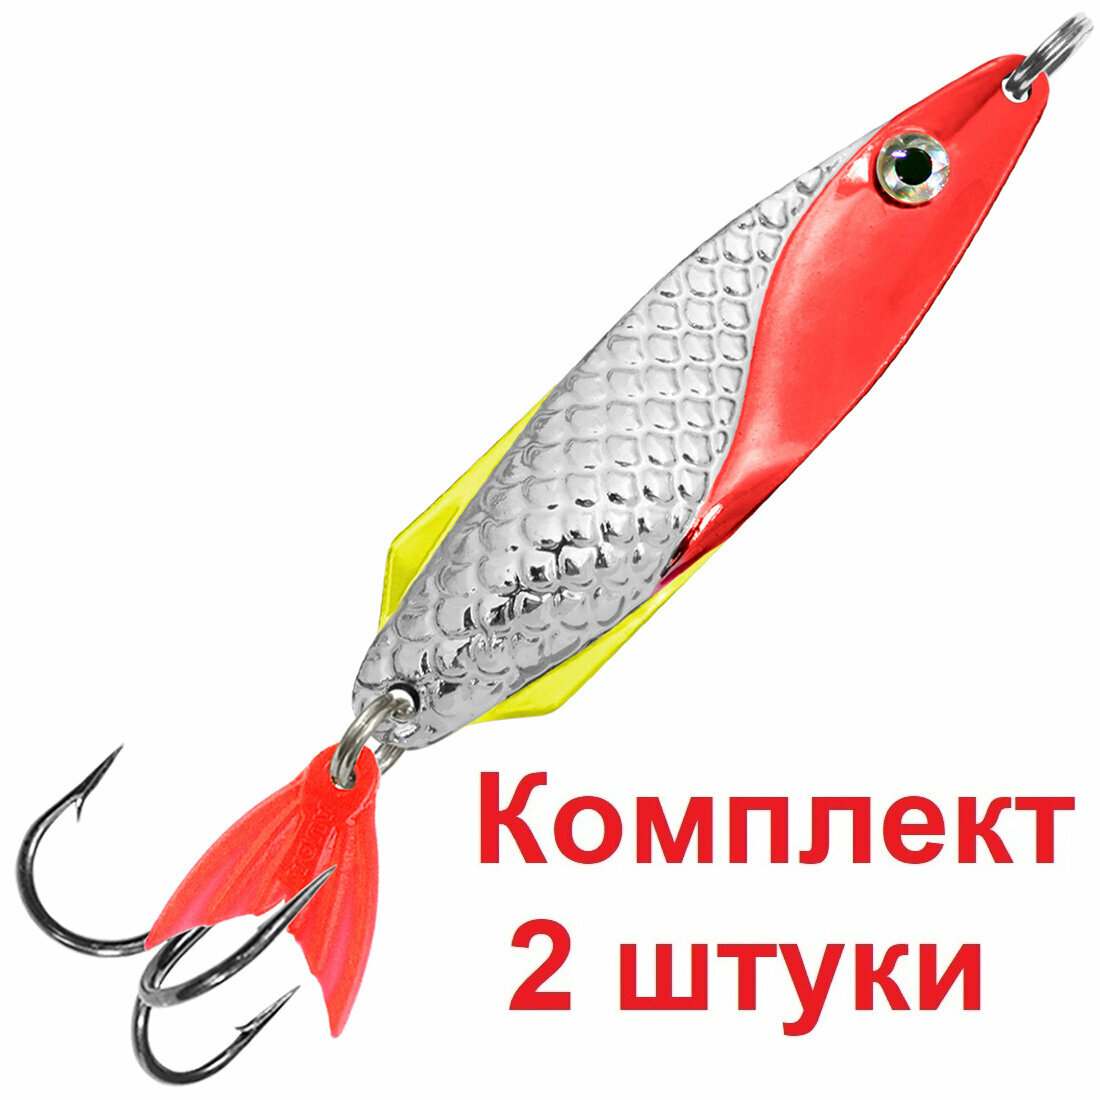 Блесна летняя AQUA для рыбалки финт 34,0g цвет 03 (серебро, красный металлик), 2 штуки в комплекте